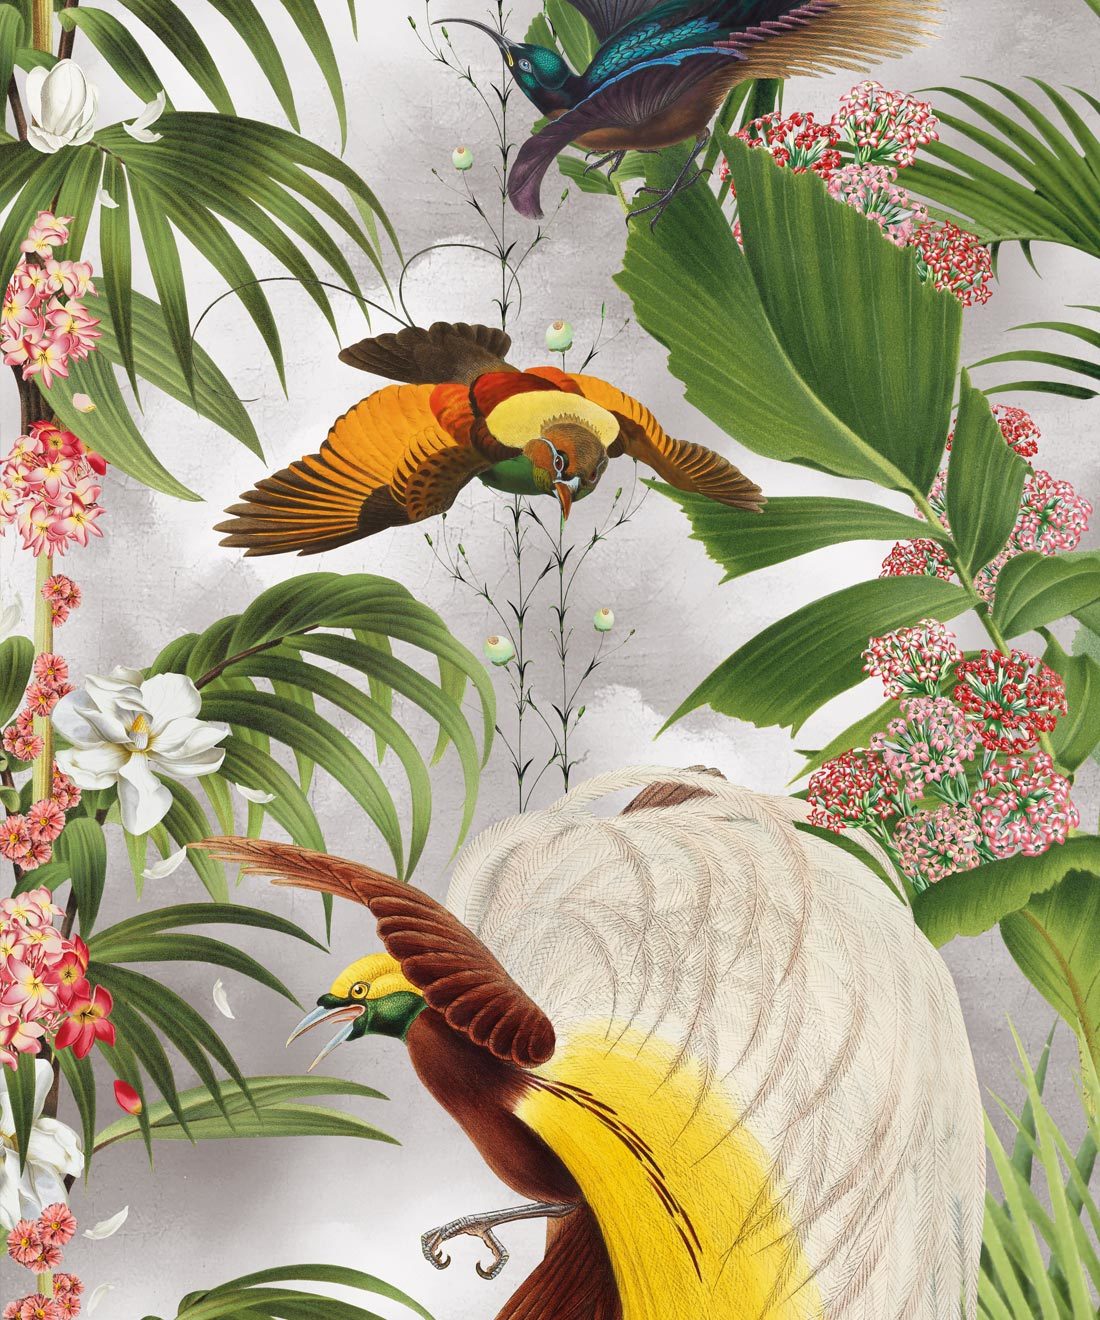 Paradiso Wallpaper - Fond d'écran botanique tropical avec des oiseaux exotiques et des palmiers